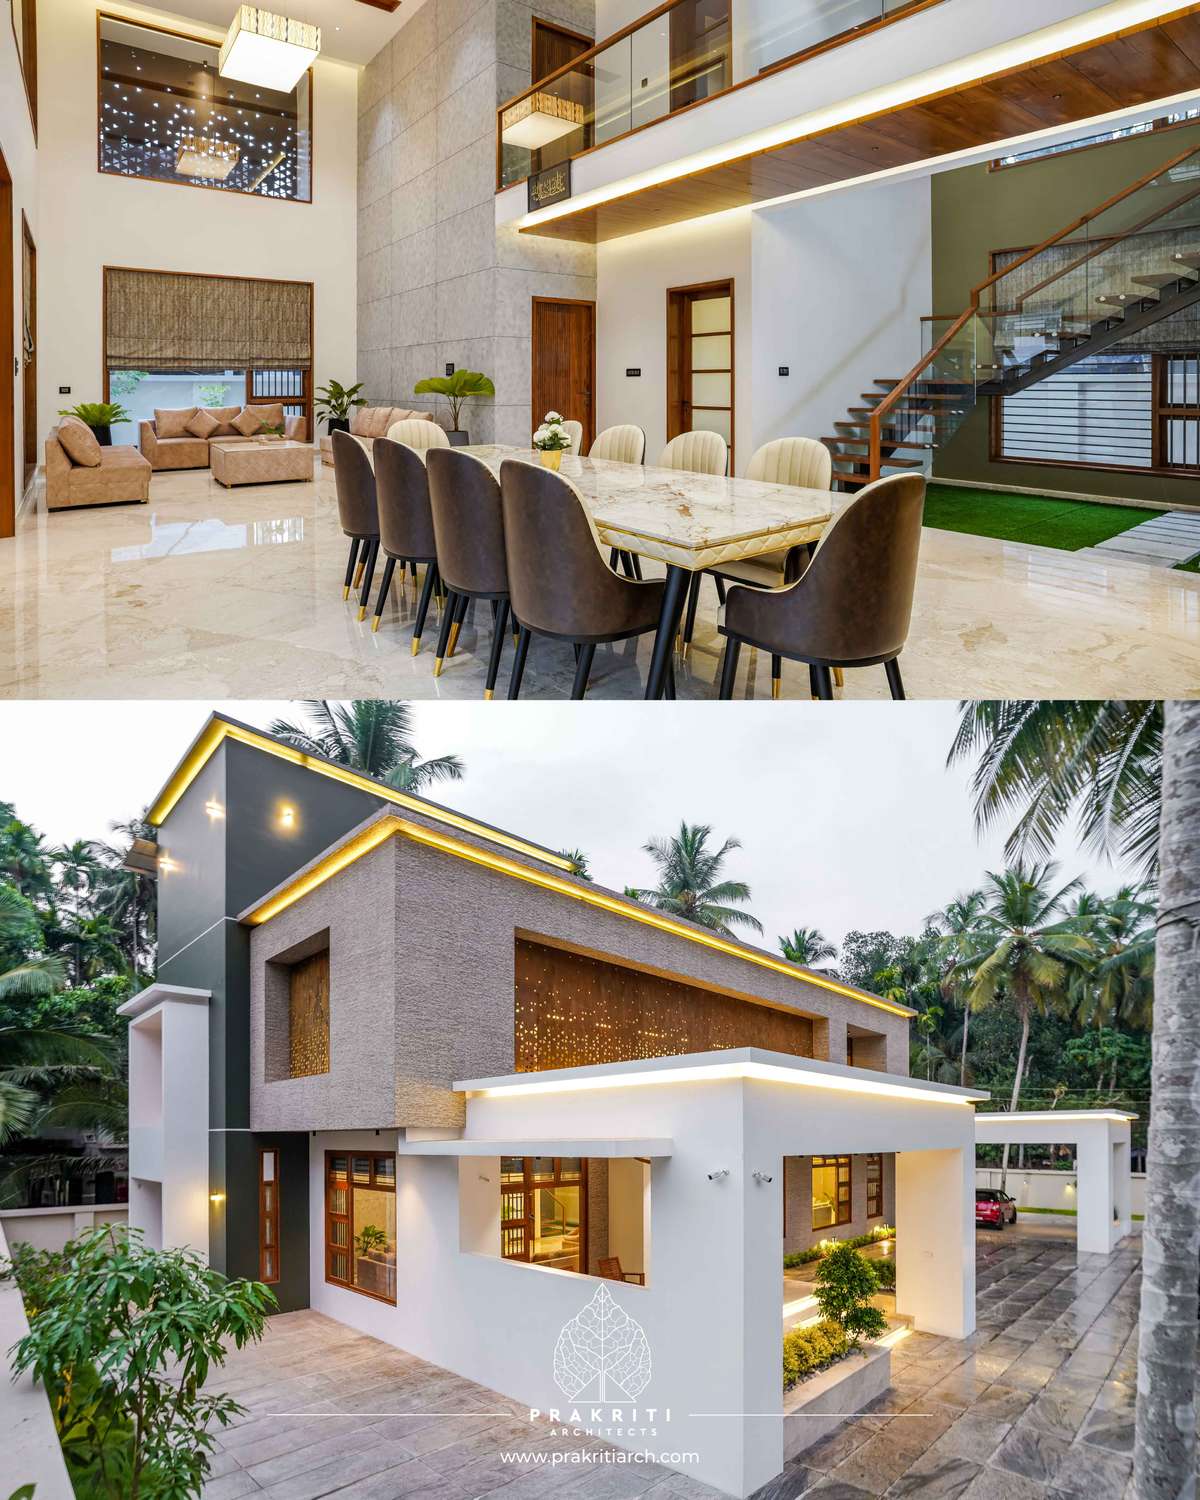 #koloapp  #contemporaryhomes  #KeralaStyleHouse  #keralaarchitectures  #architecturedesigns  #architectureldesigns  #keralaarchitects  #lighting  #Malappuram   #Dipin